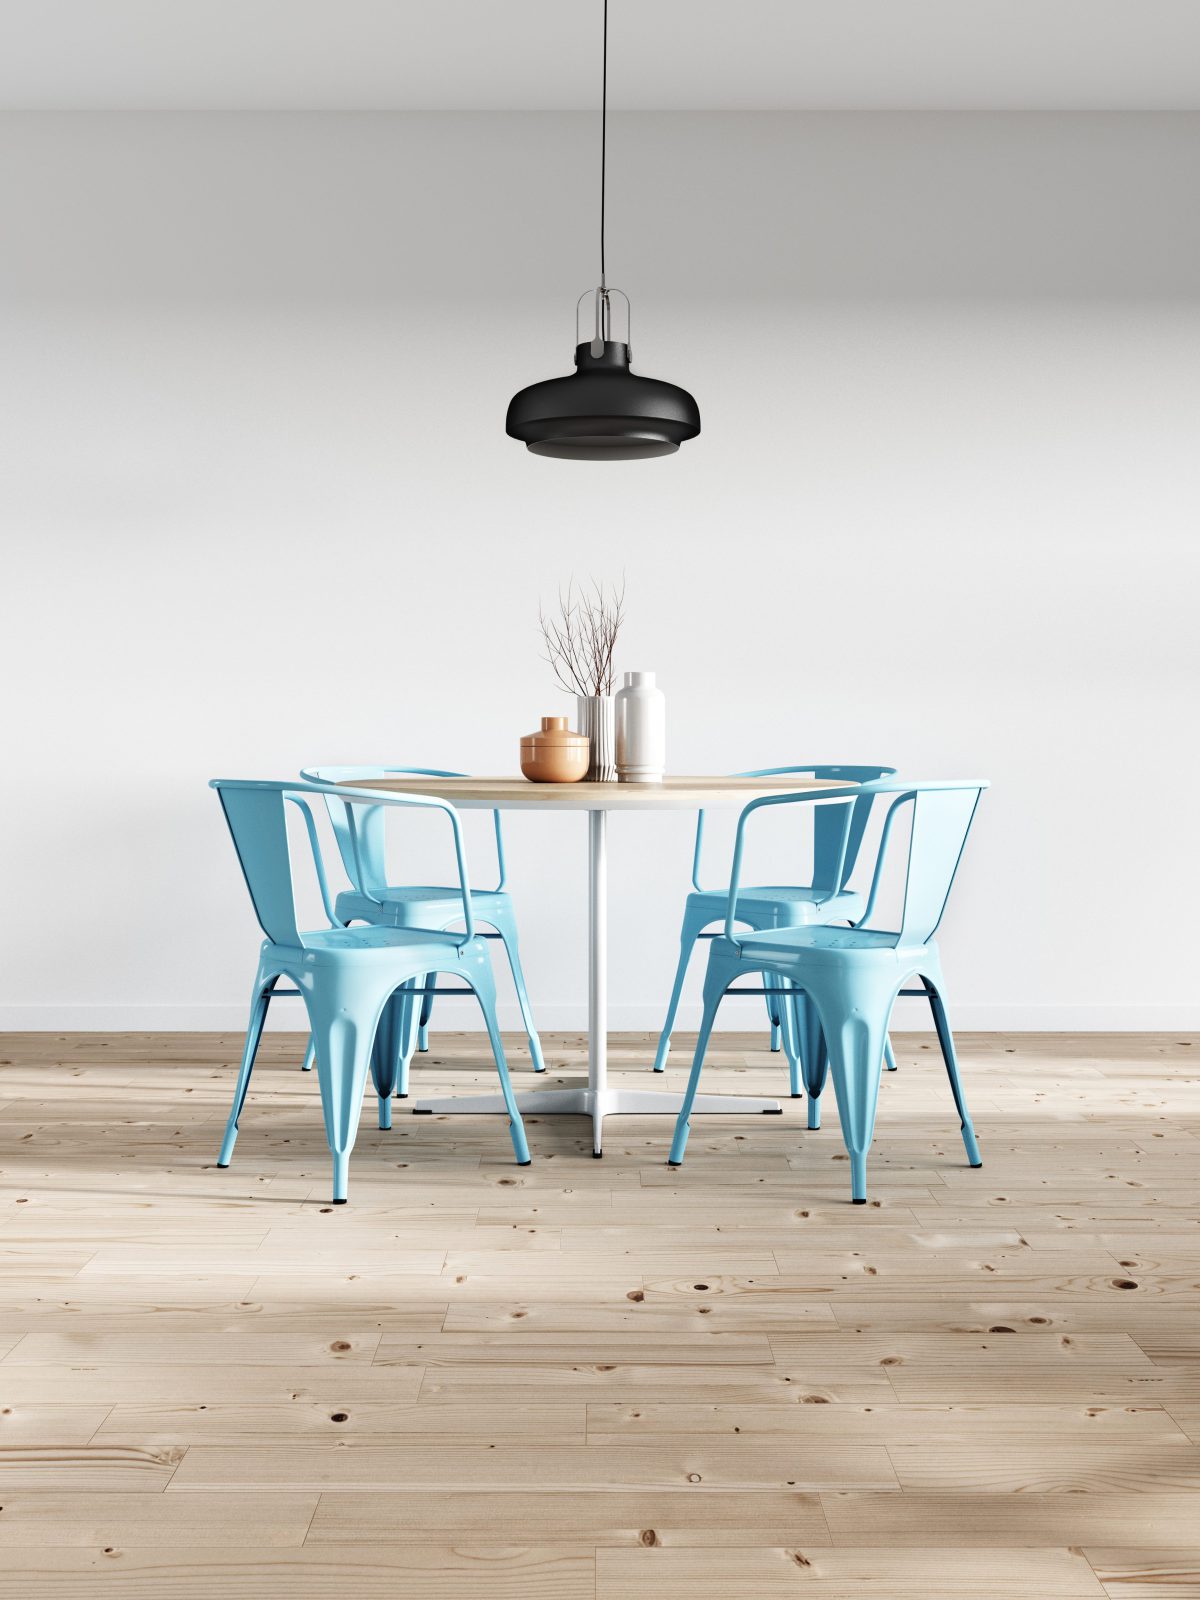 niebieskie krzesła, drewniany stół